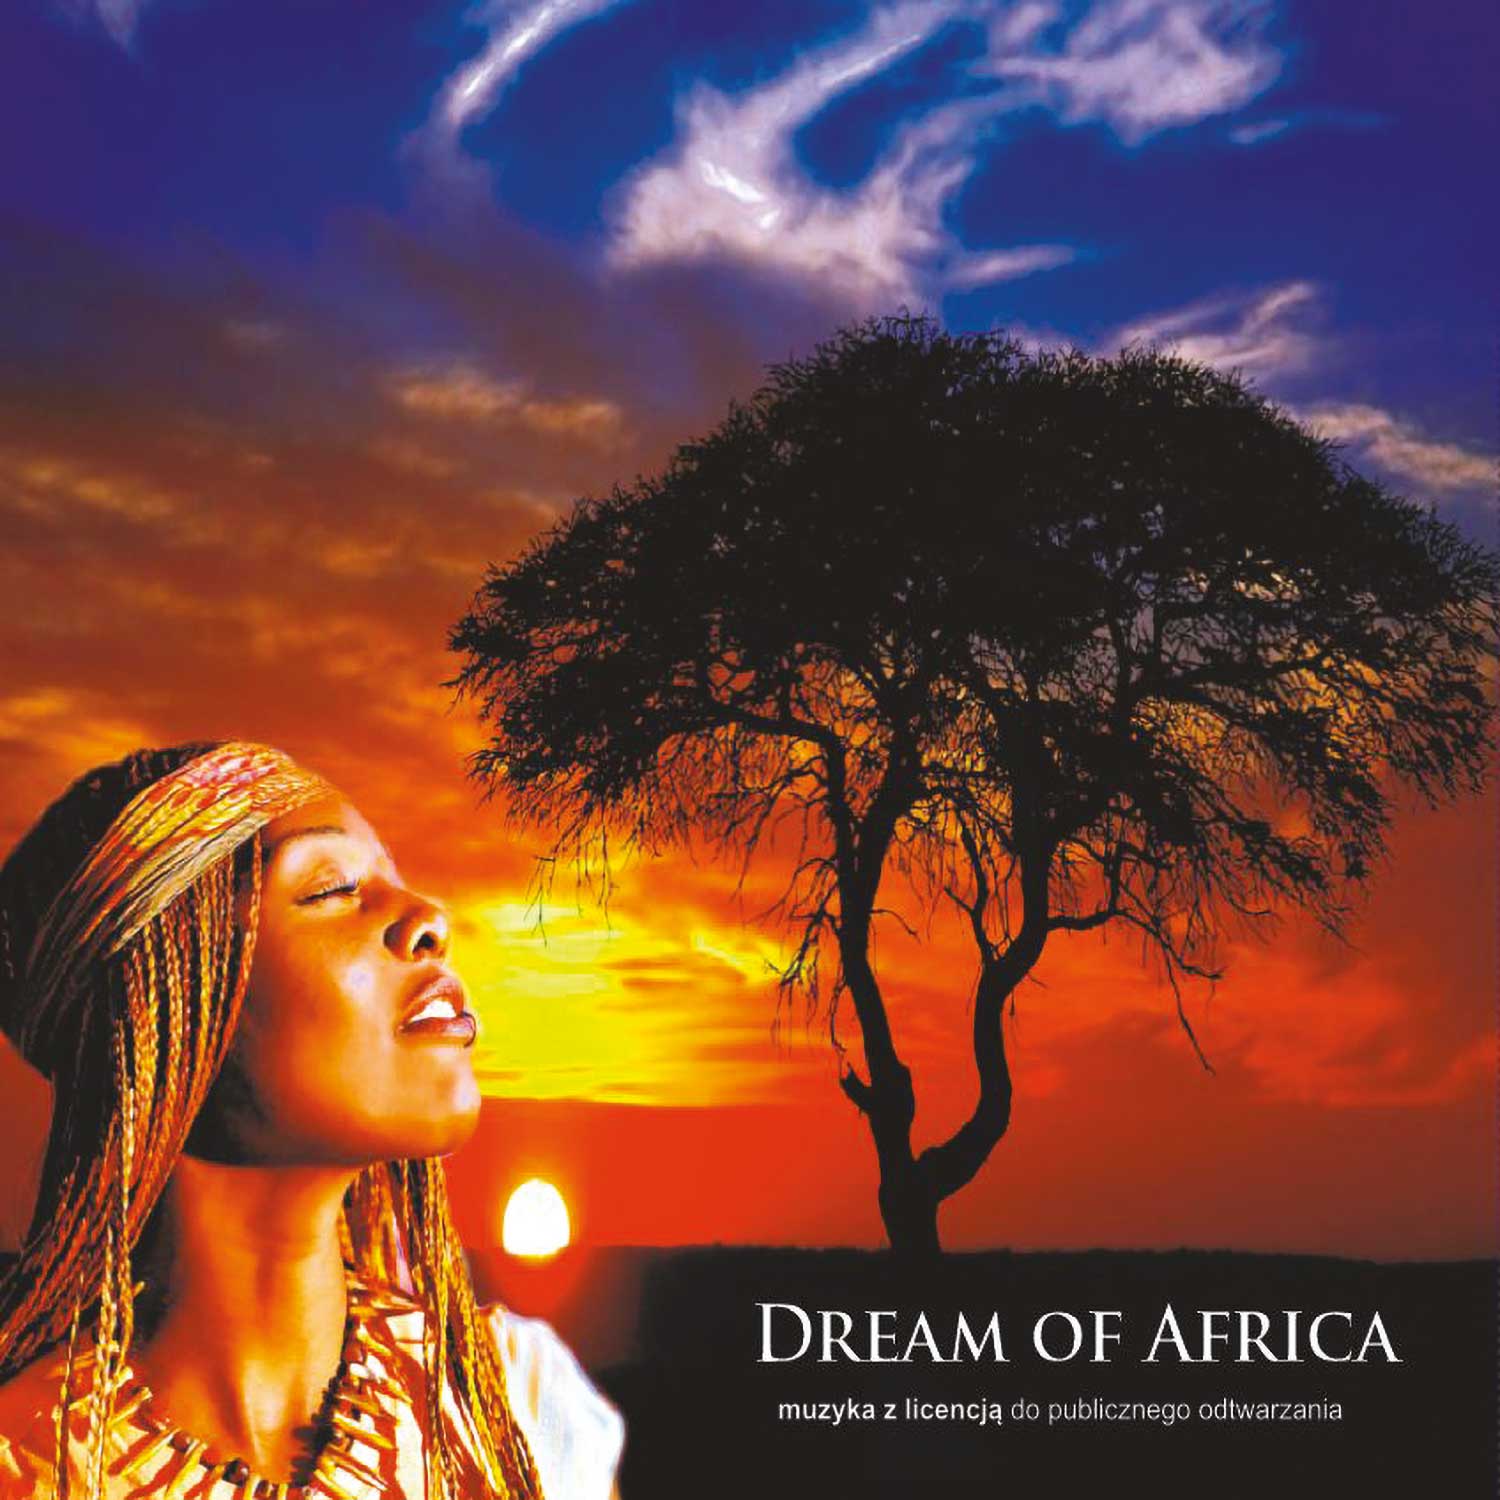 Dream of Africa